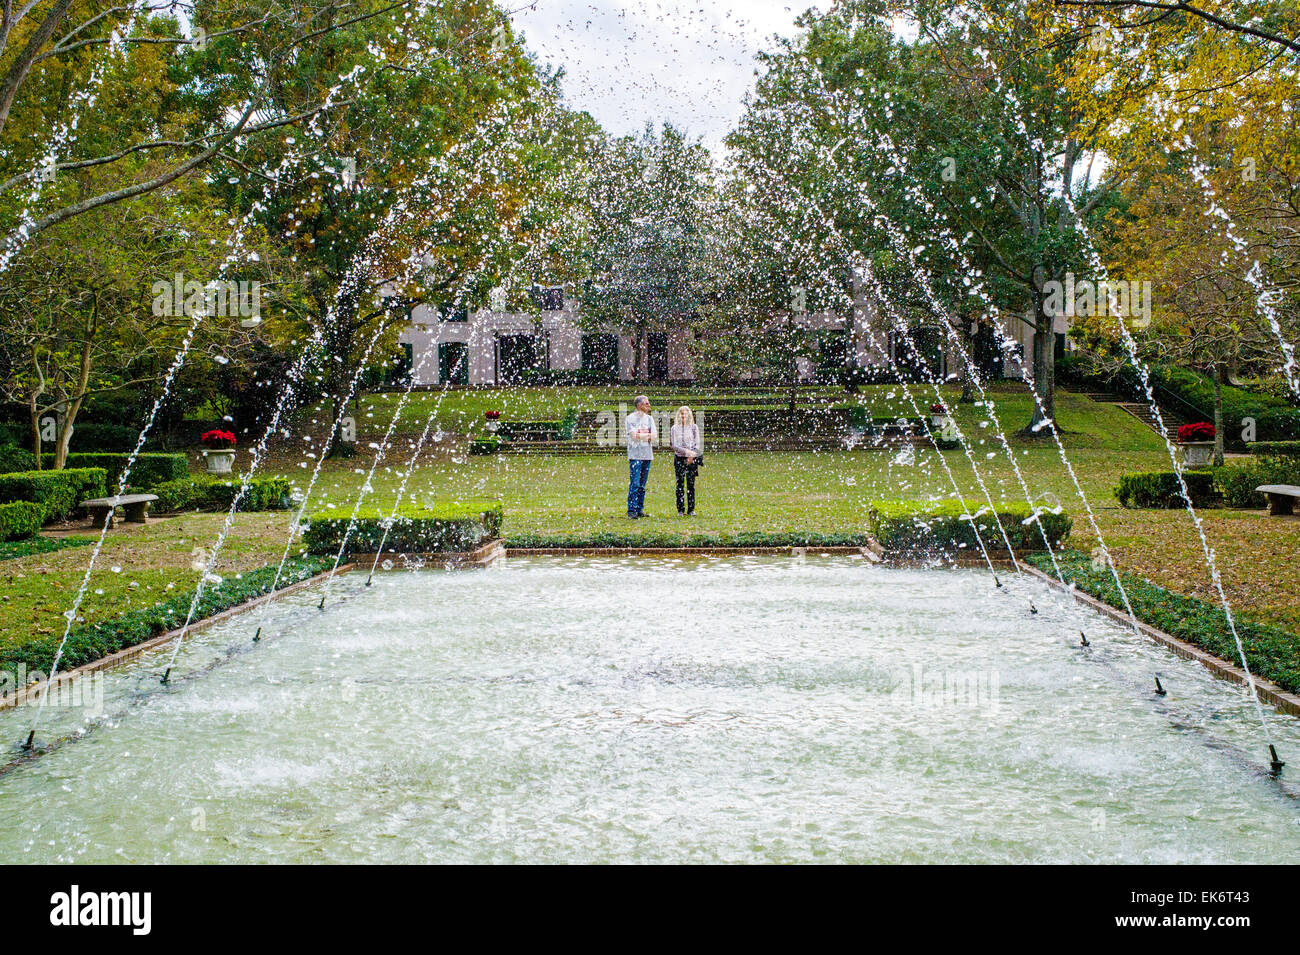 Les touristes voir les fontaines, Bayou Bend gardens & home, Musée des beaux-Arts de Houston Banque D'Images